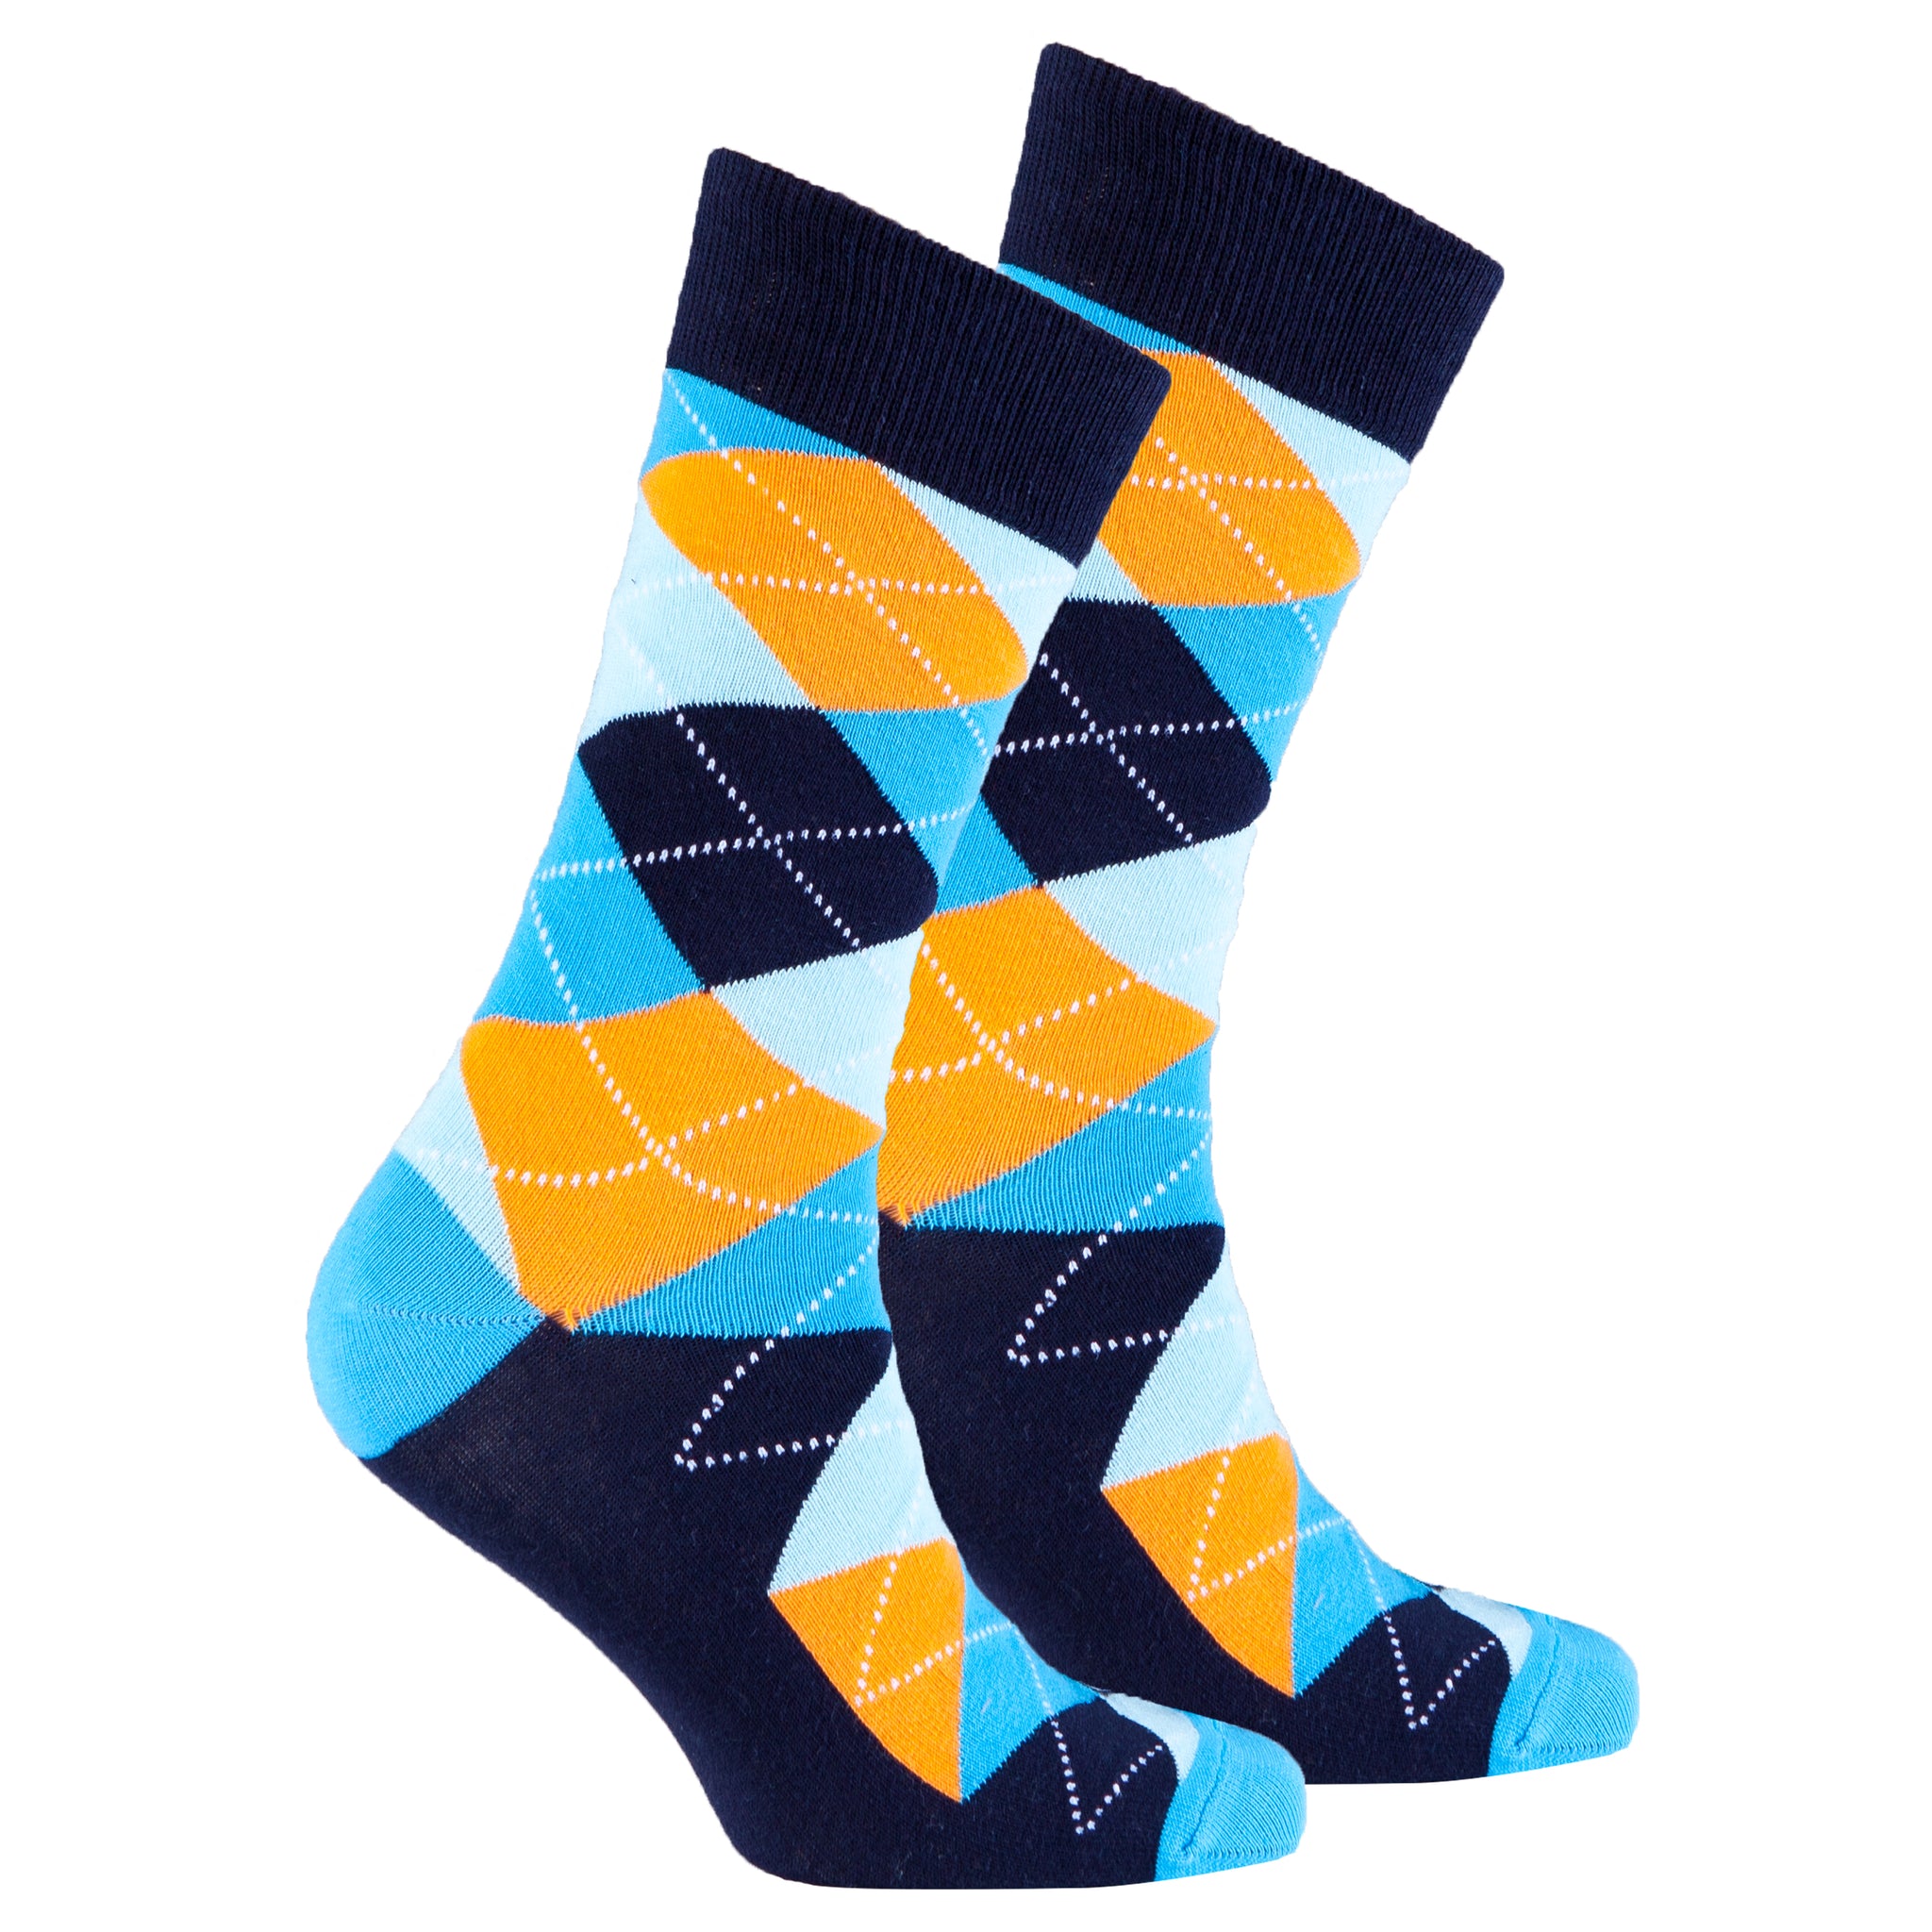 Men's Vibrant Sky Argyle Socks